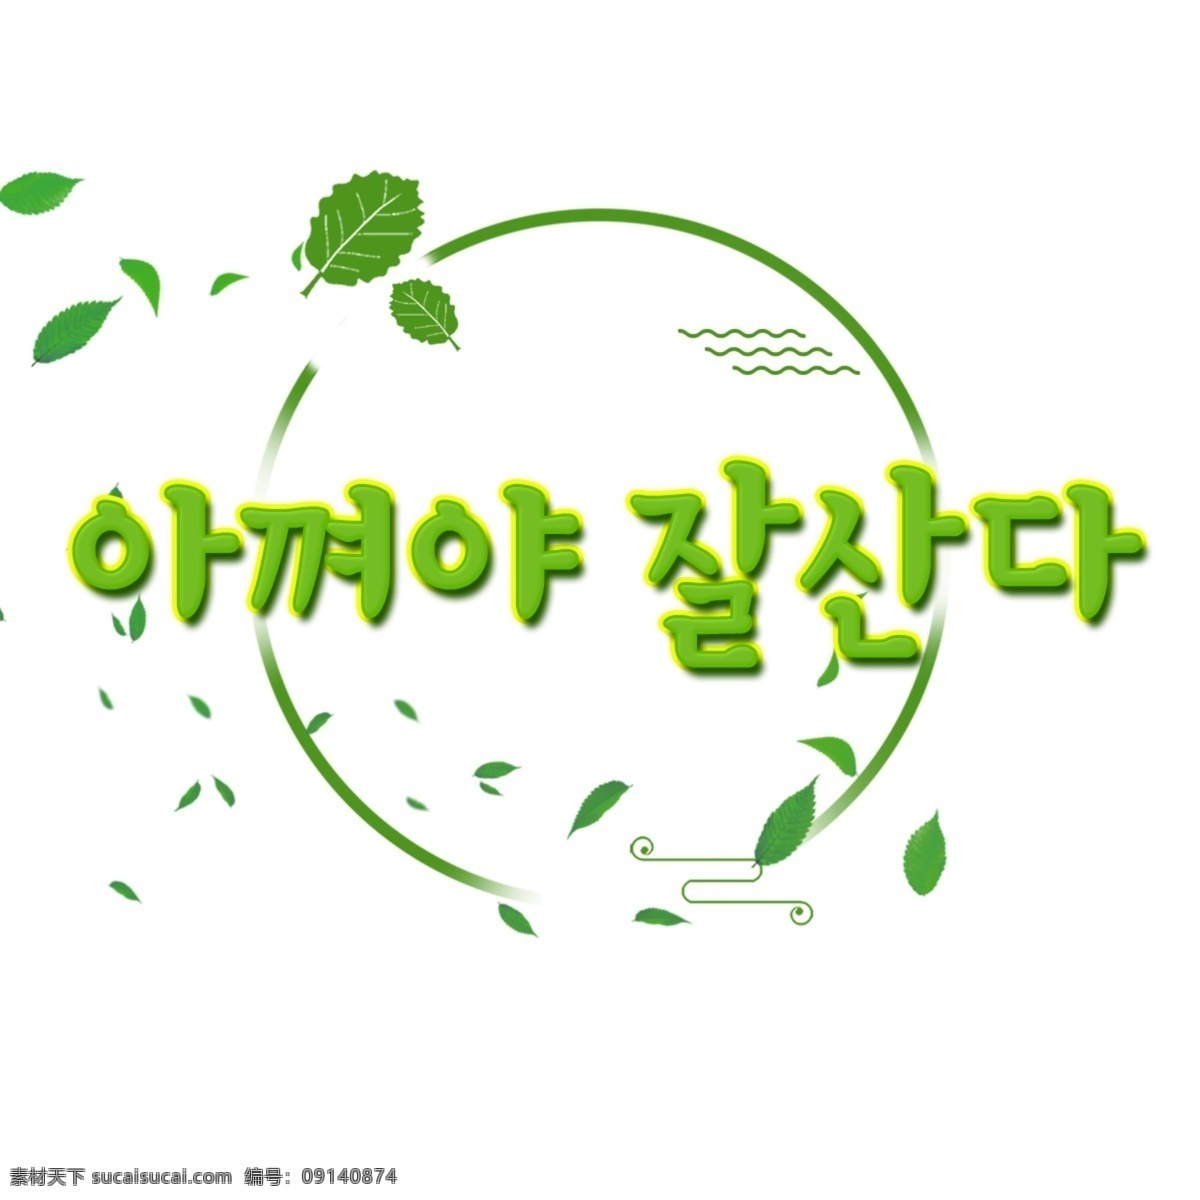 韩国 人 生活 一起 人物 韩国字体 字形 韩国人 现场 爱 greenbricks 环保 节能 低碳